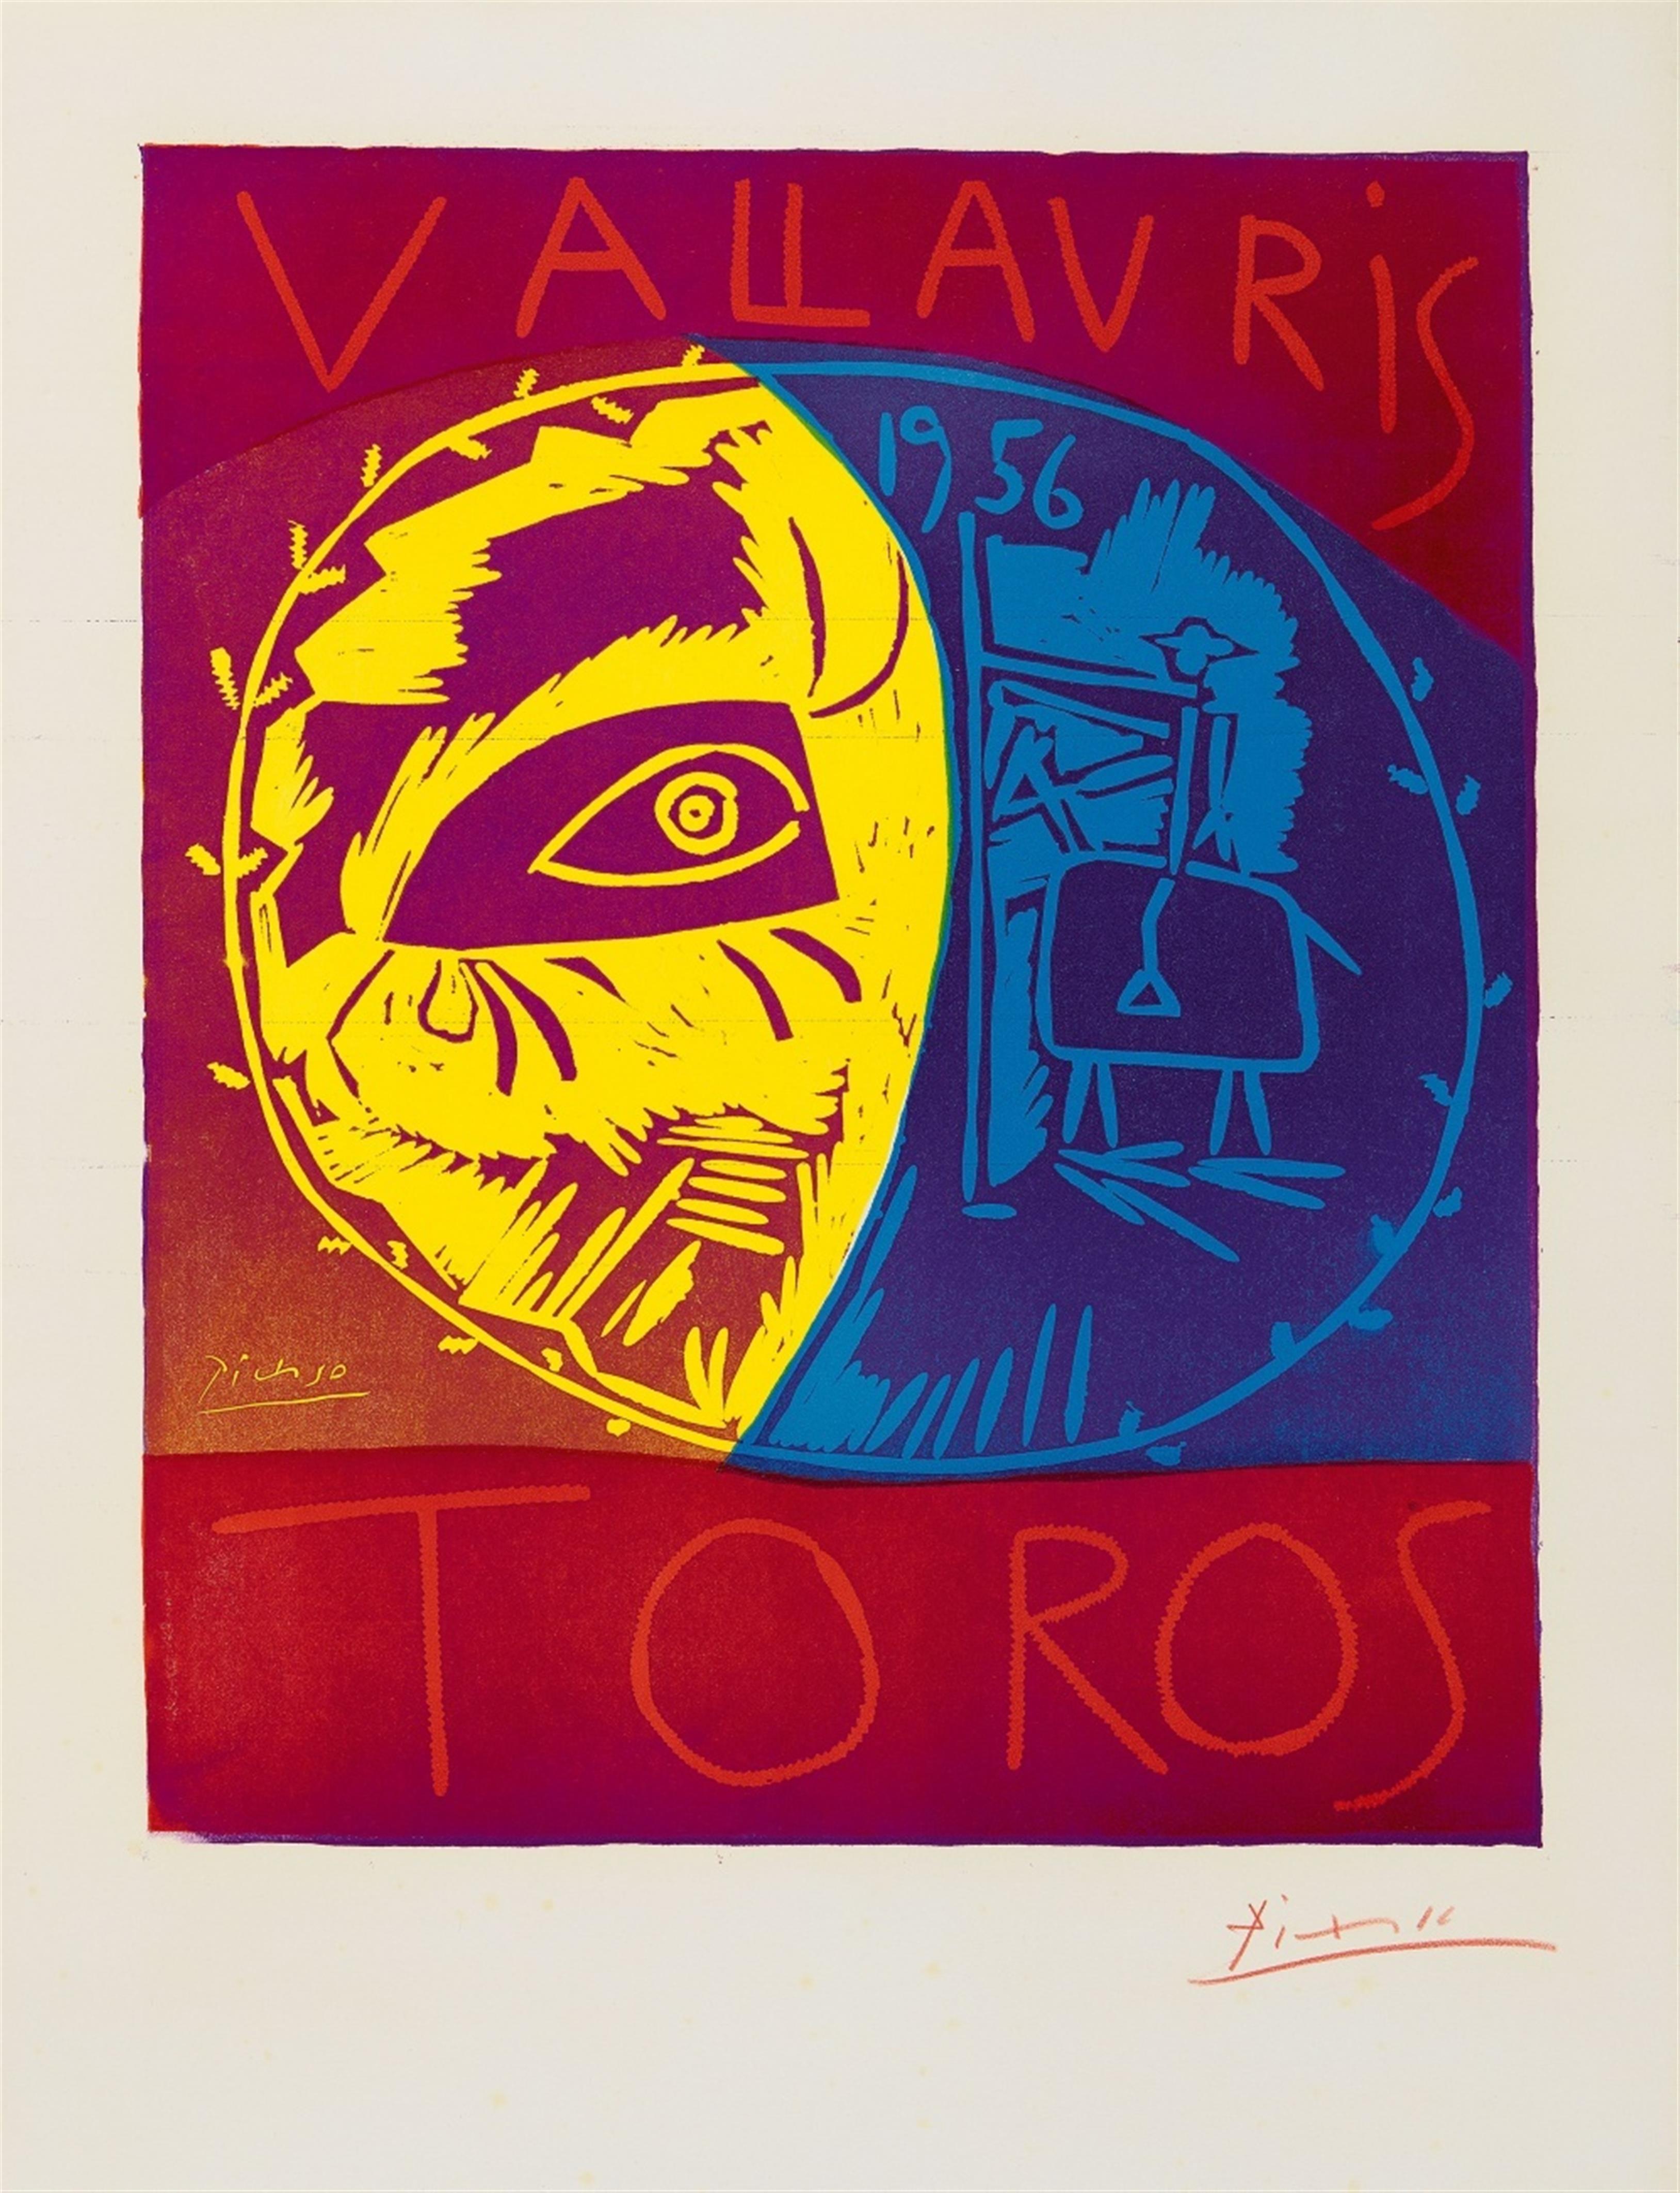 Pablo Picasso - Vallauris 1956 Toros - image-1